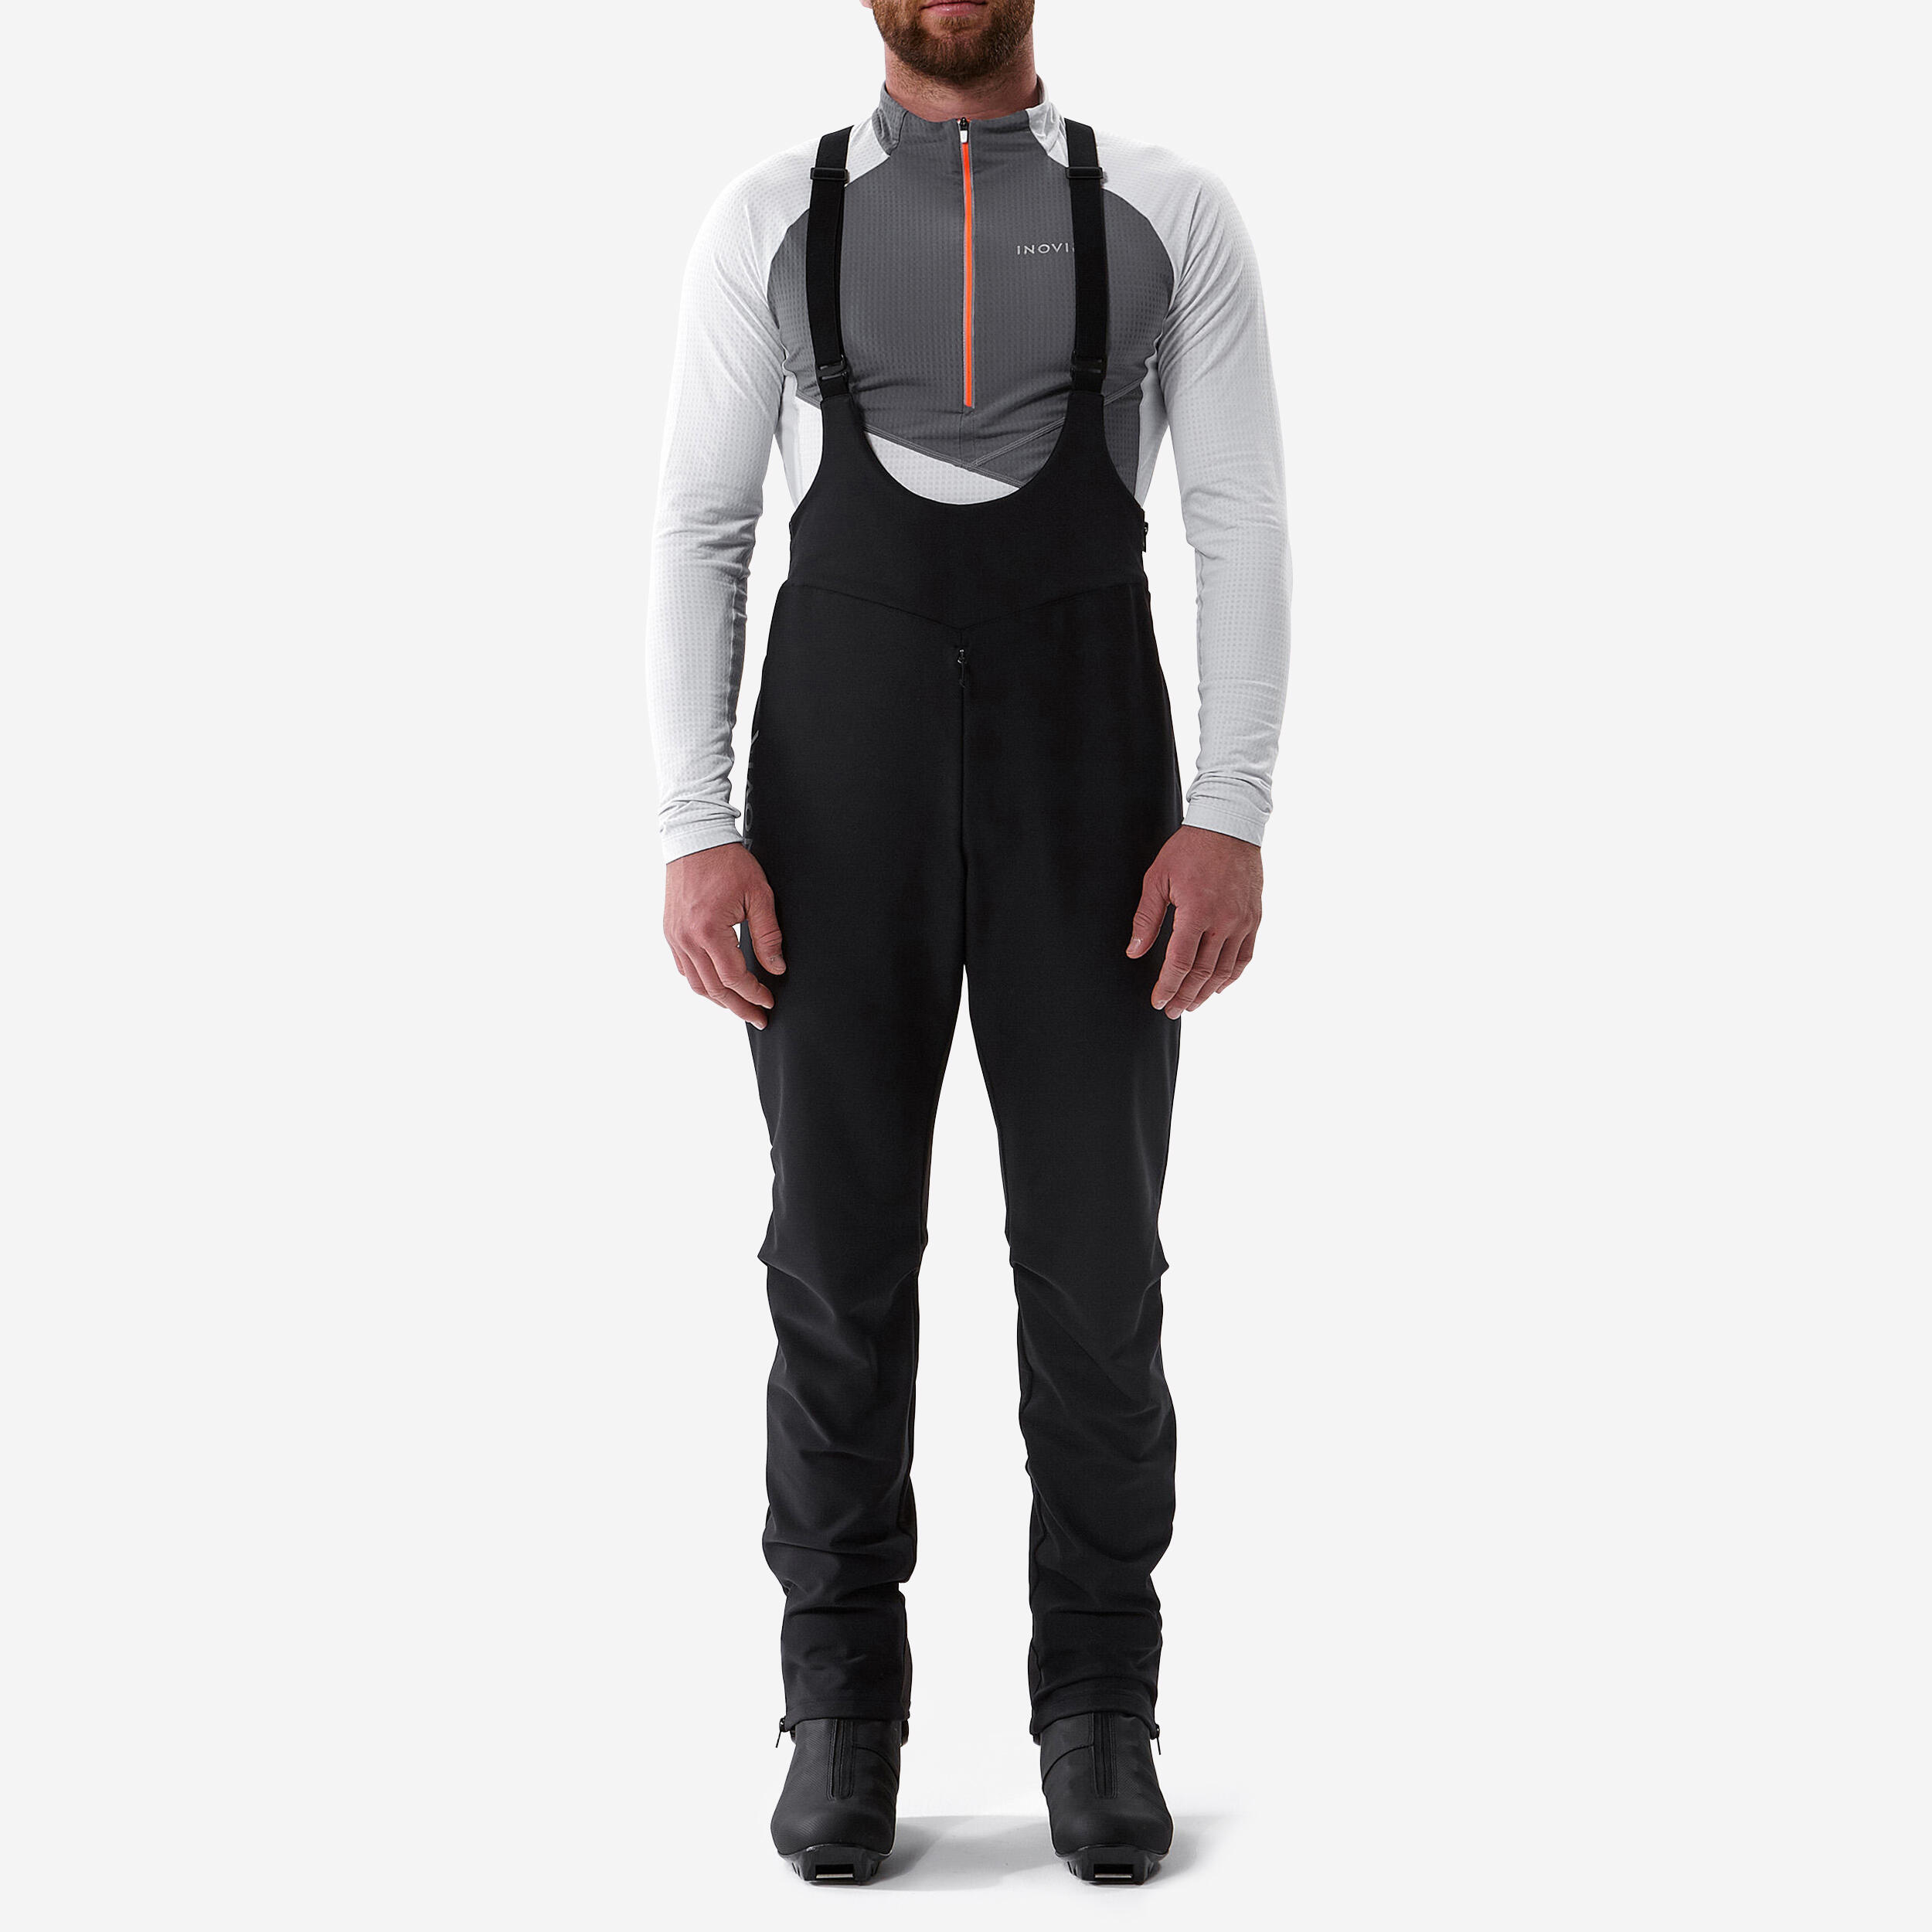 Men's Cross-Country Skiing Overpants – XC 900 Black